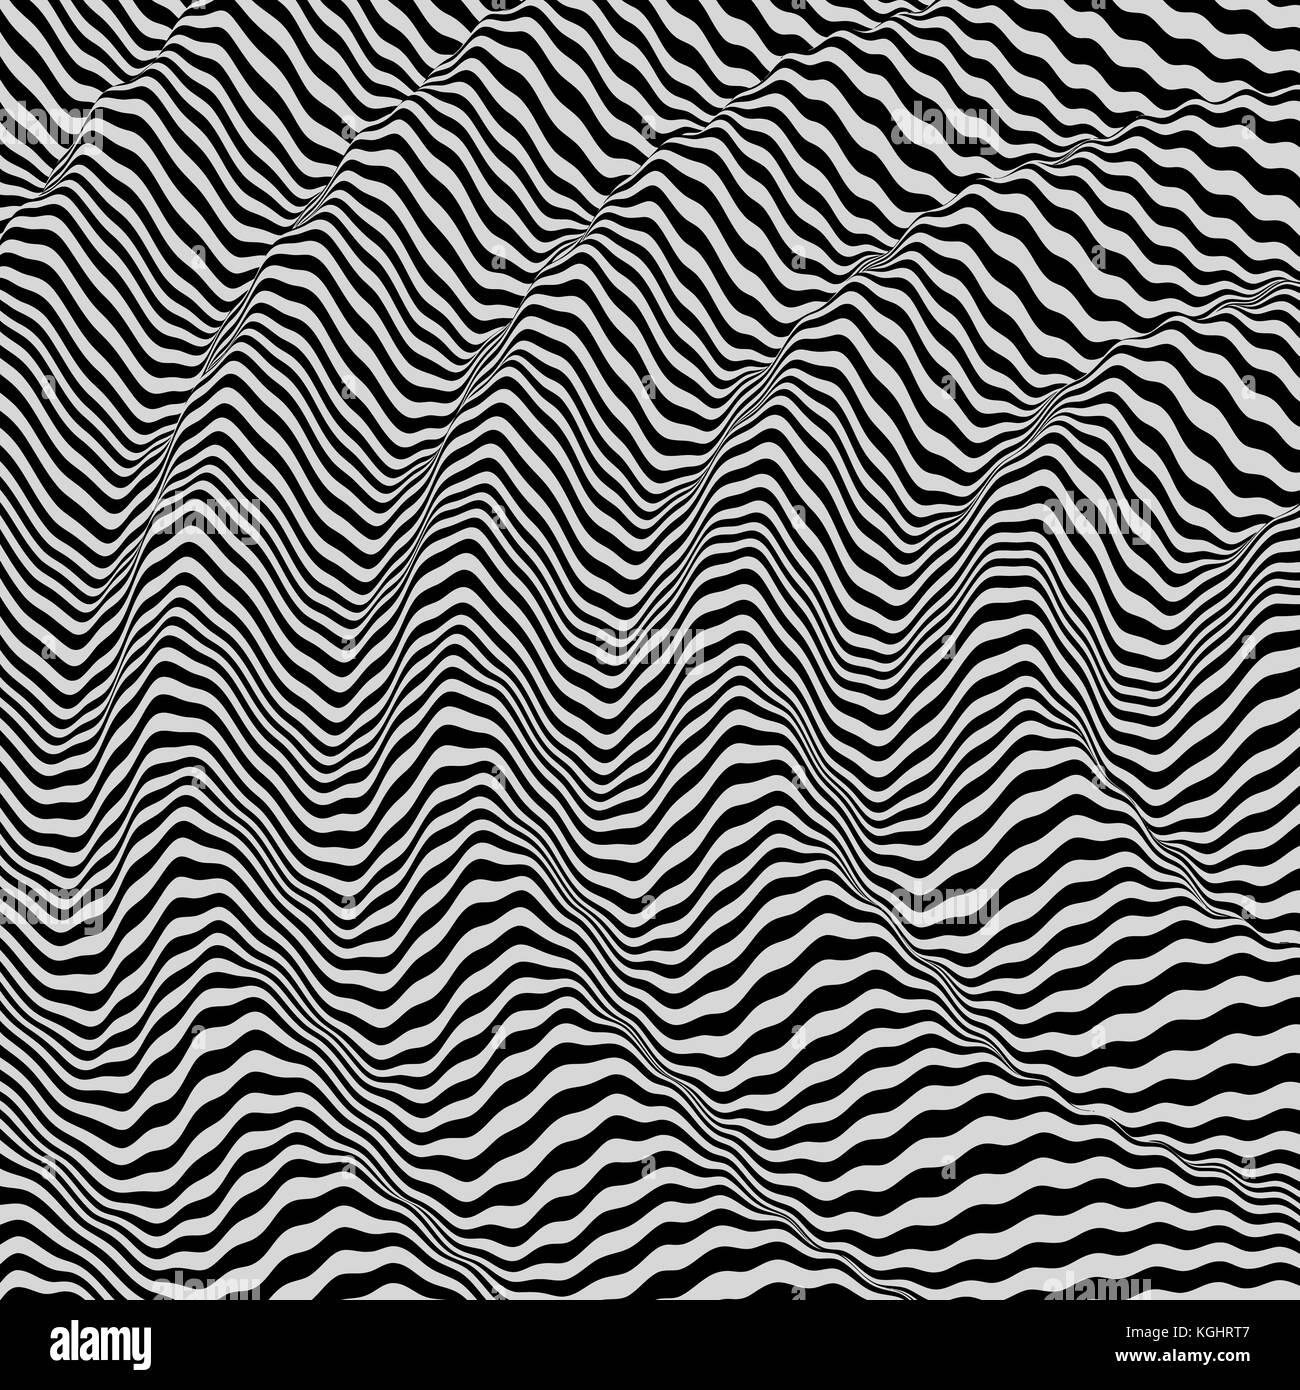 3d-wellig Hintergrund. dynamische Wirkung. schwarz-weiß Design. Muster mit optischen Täuschung. Vector Illustration. Stock Vektor